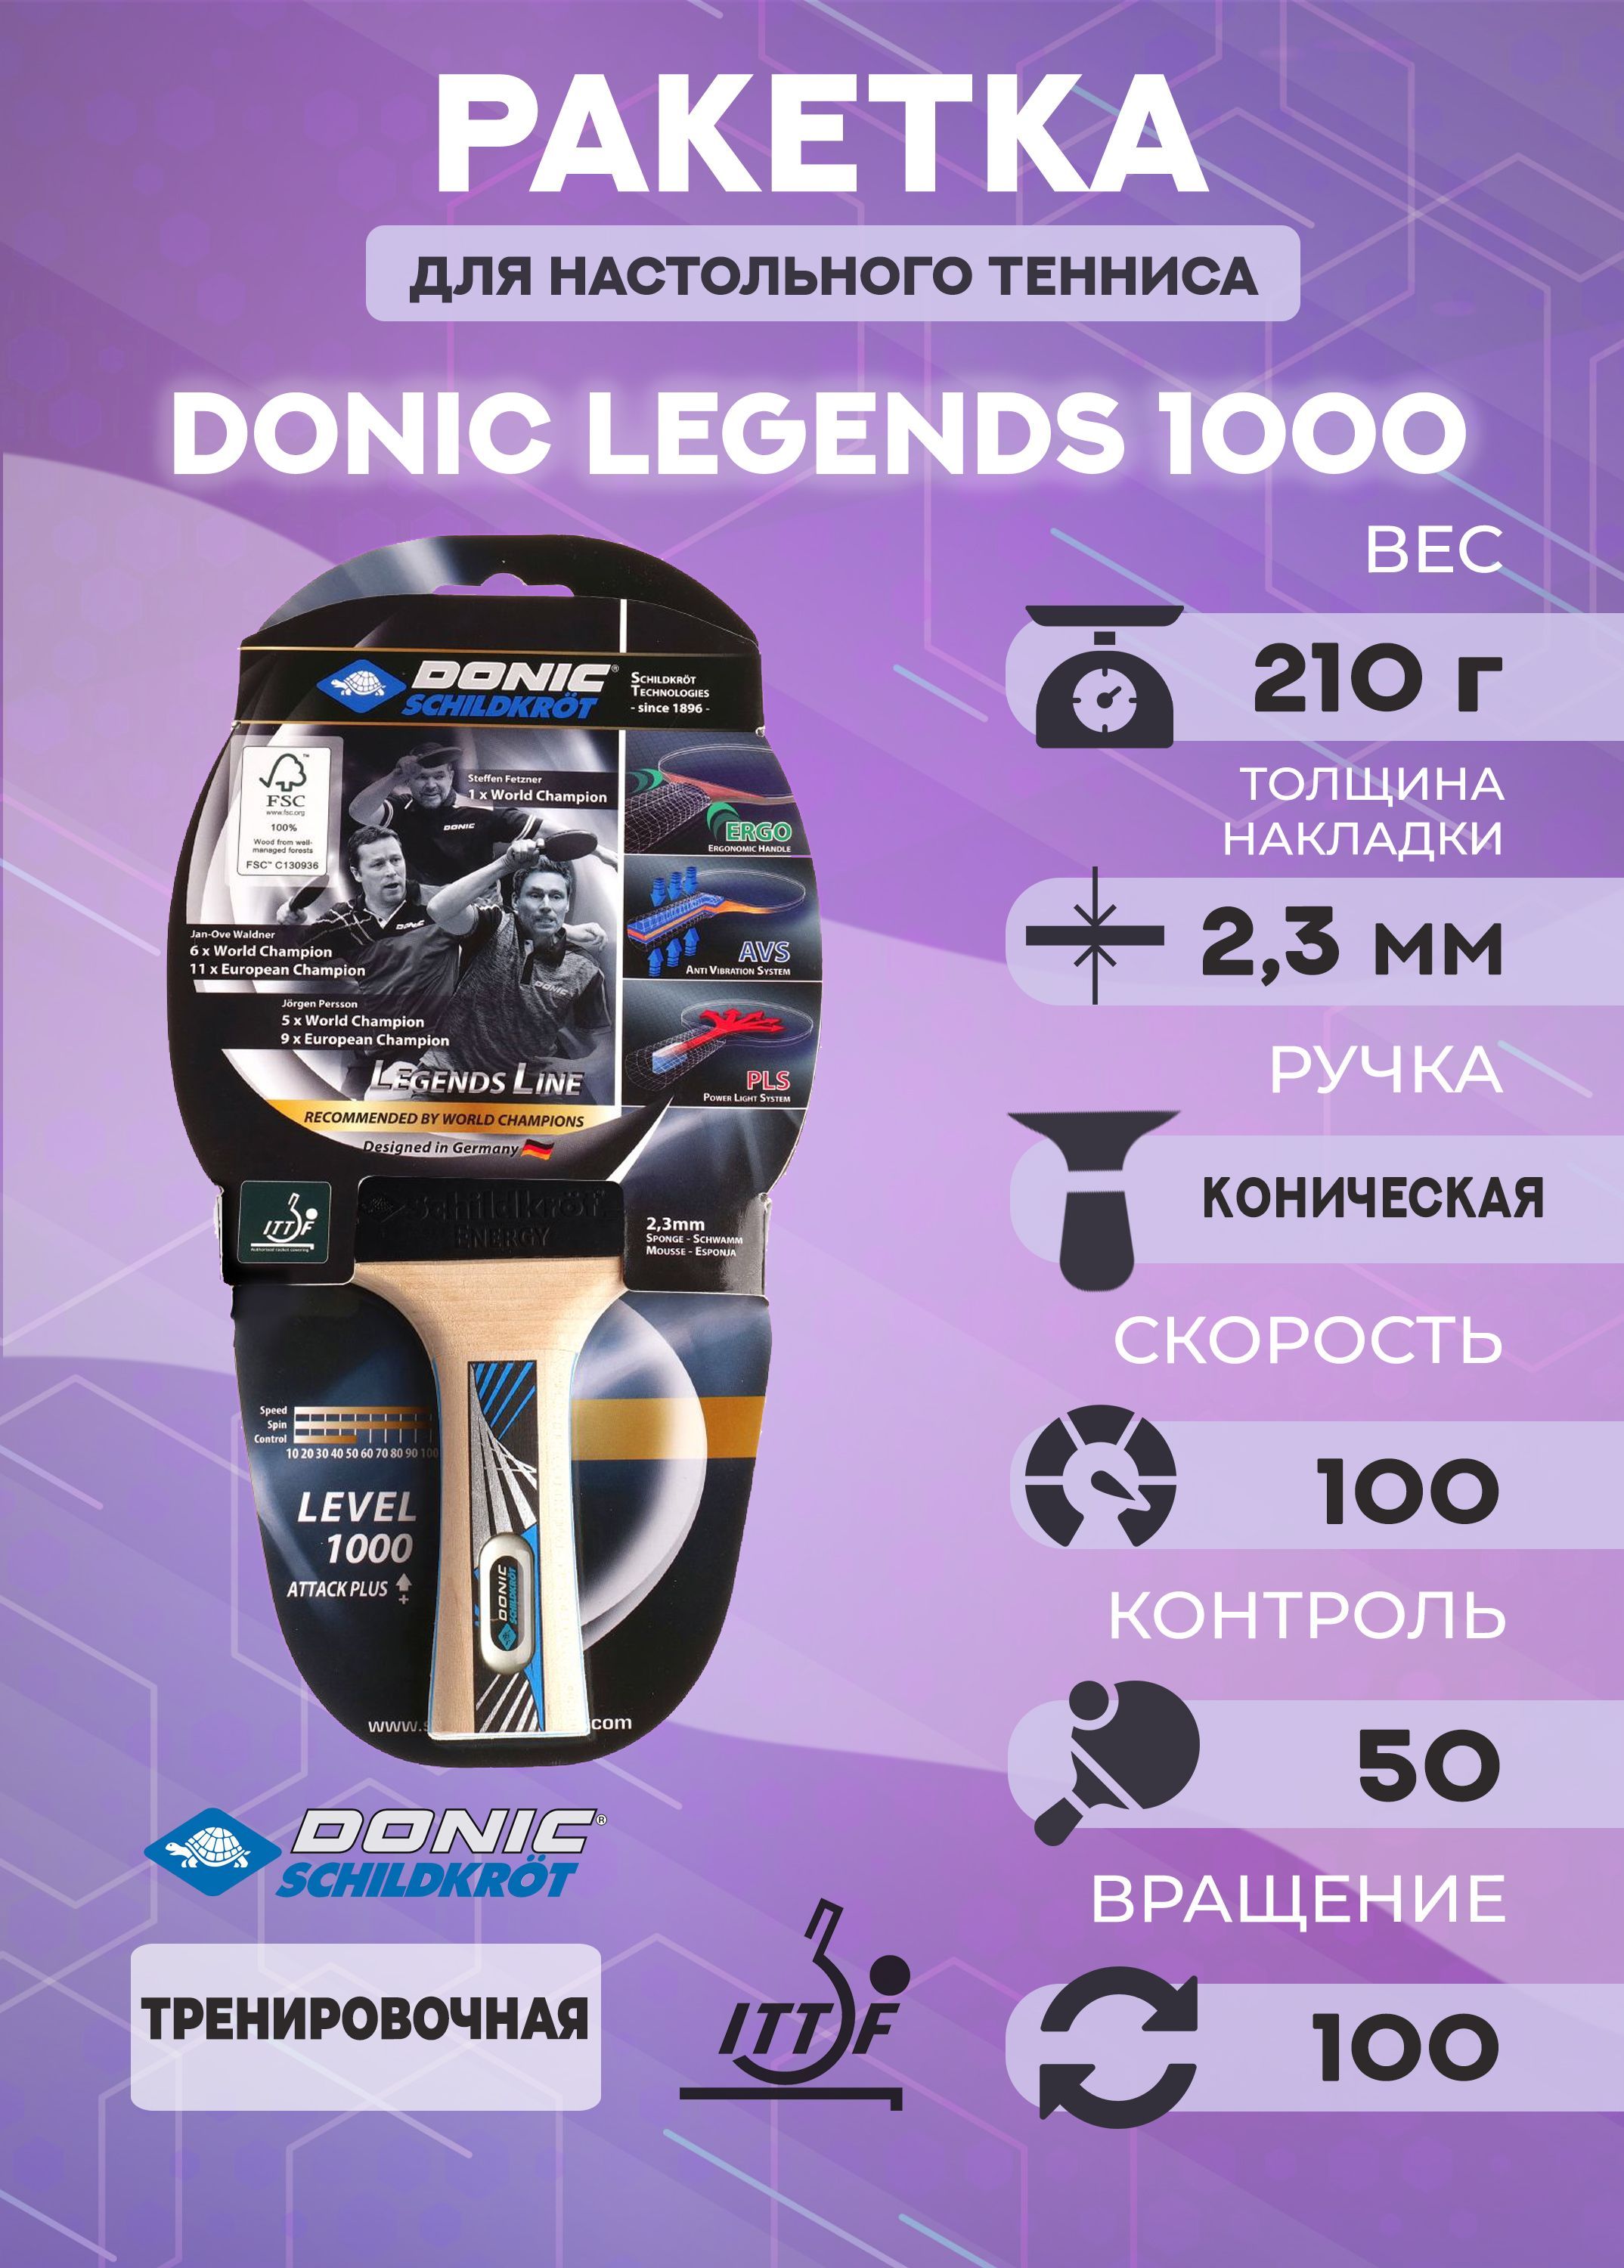 Ракетка для настольного тенниса Donic Legends 1000